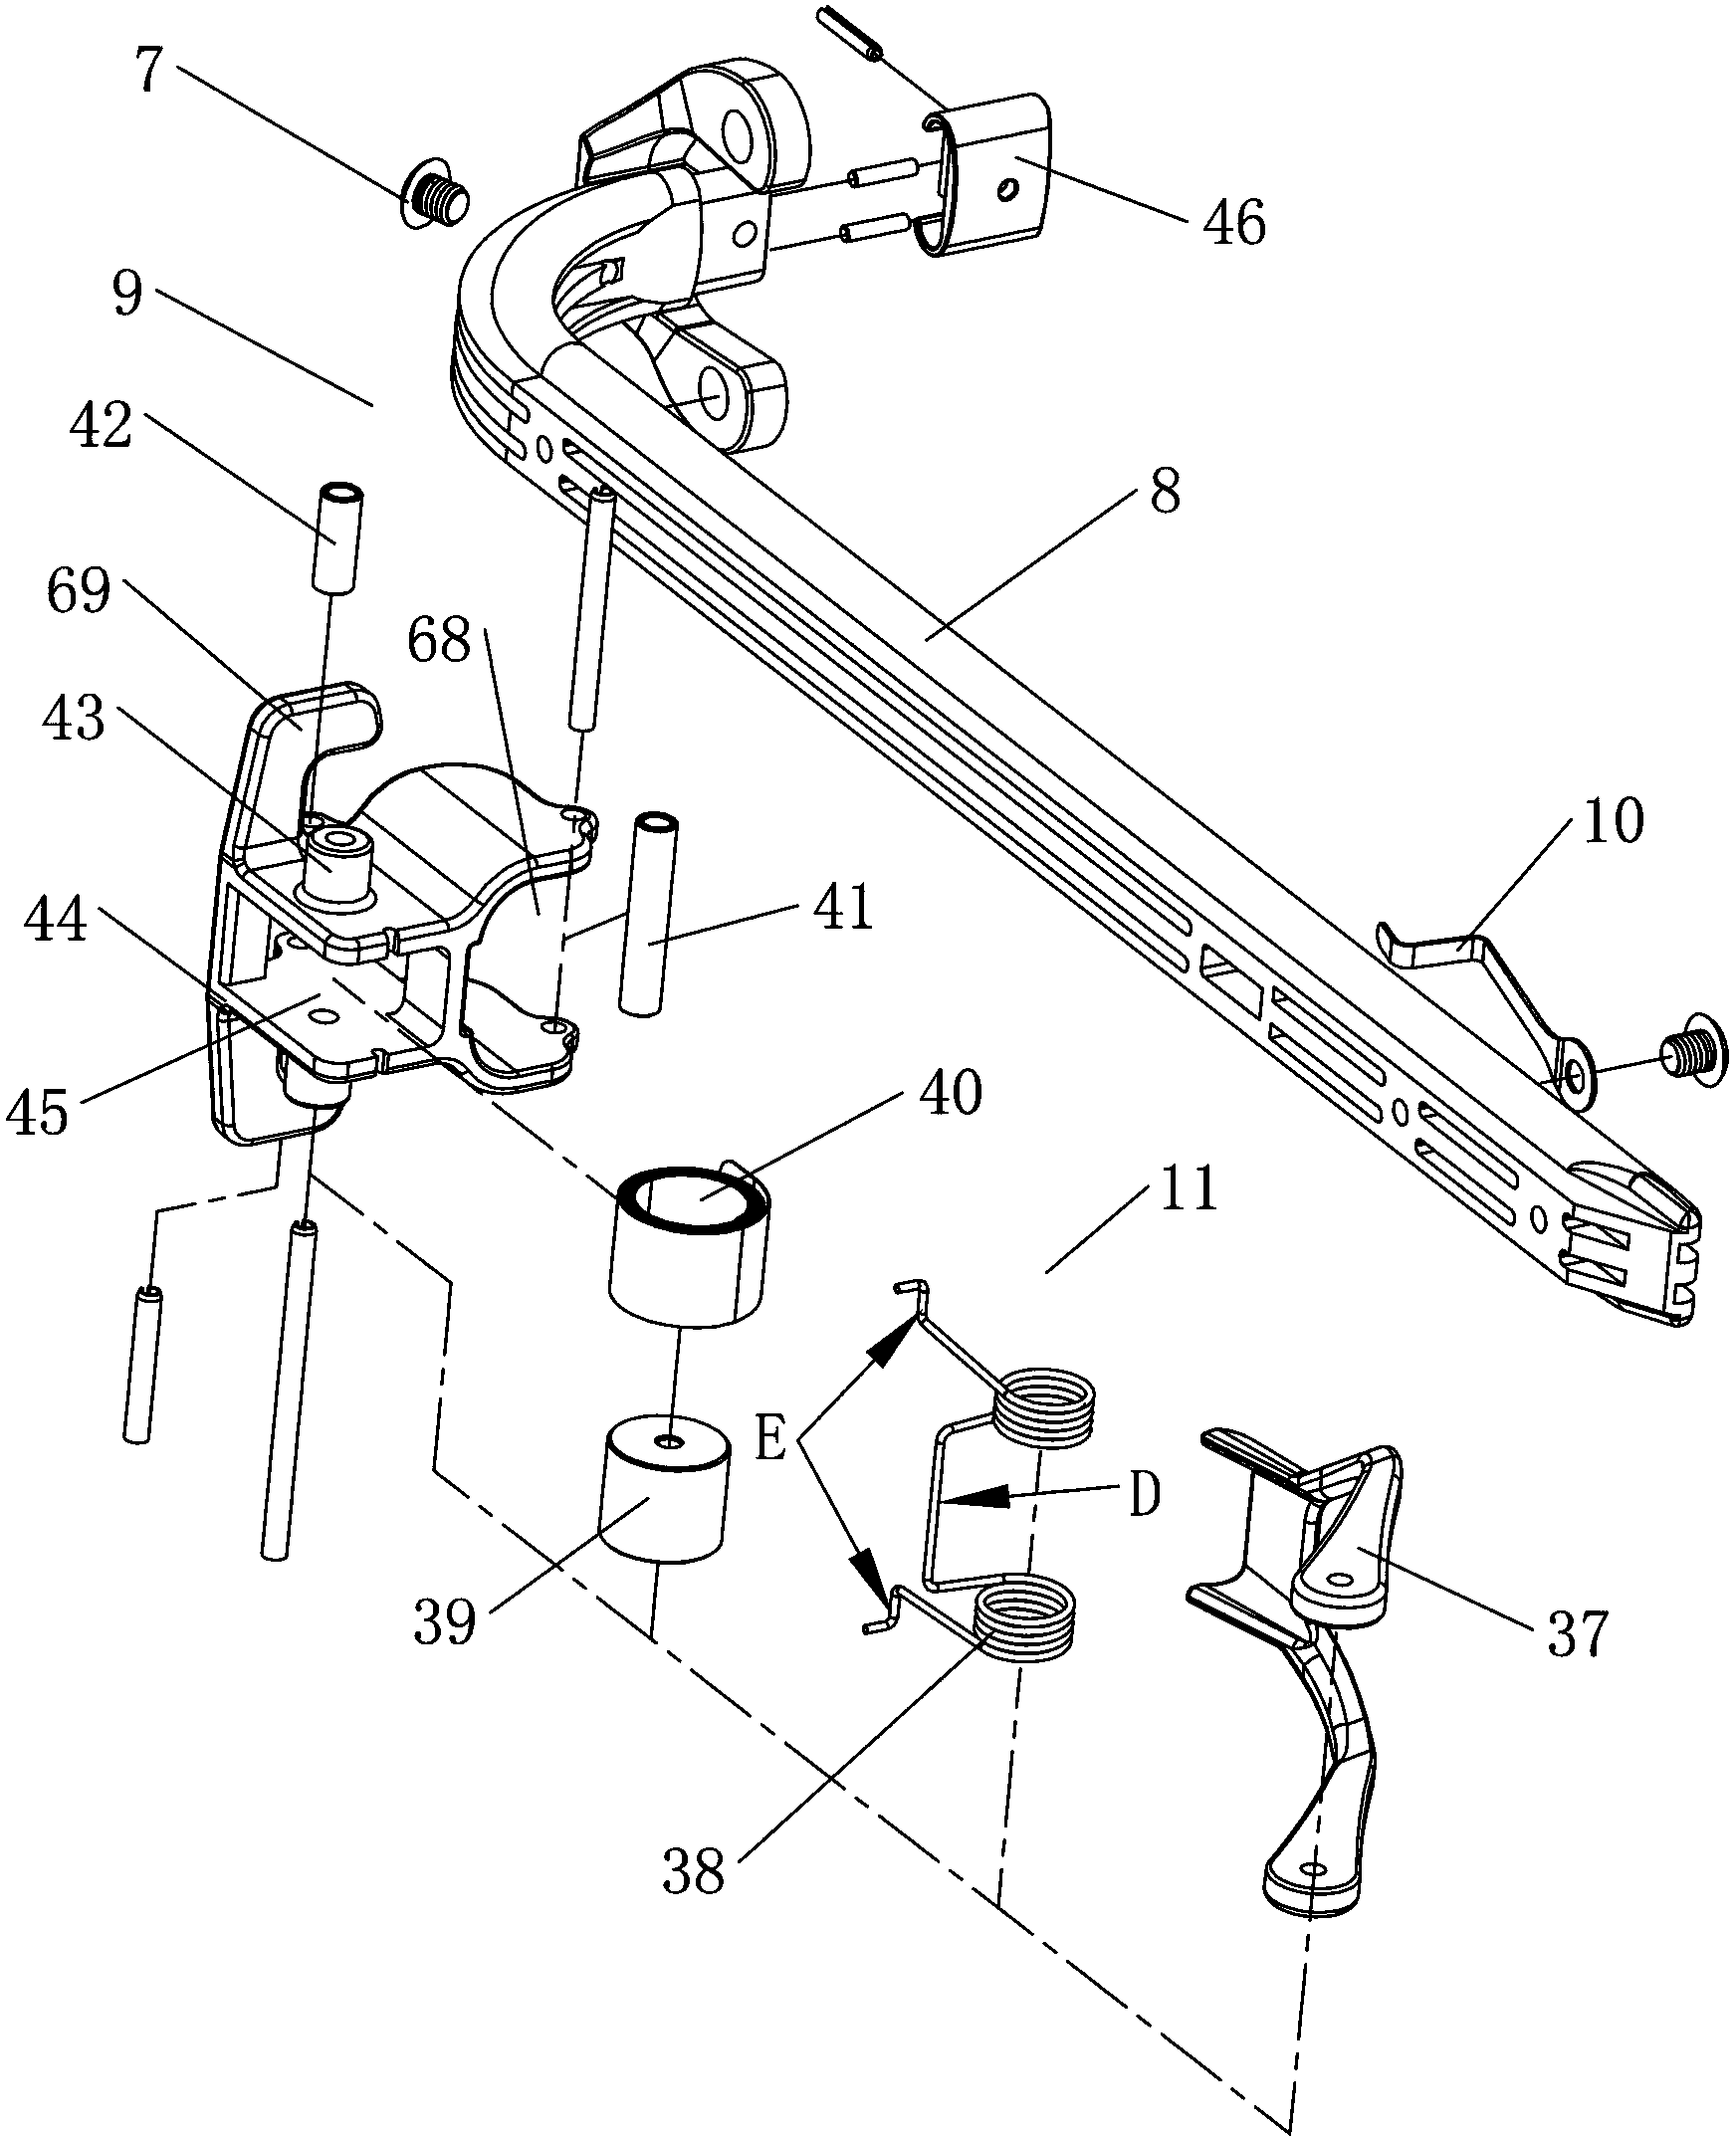 Horizontal valve vertical-type pneumatic retaining ring gun